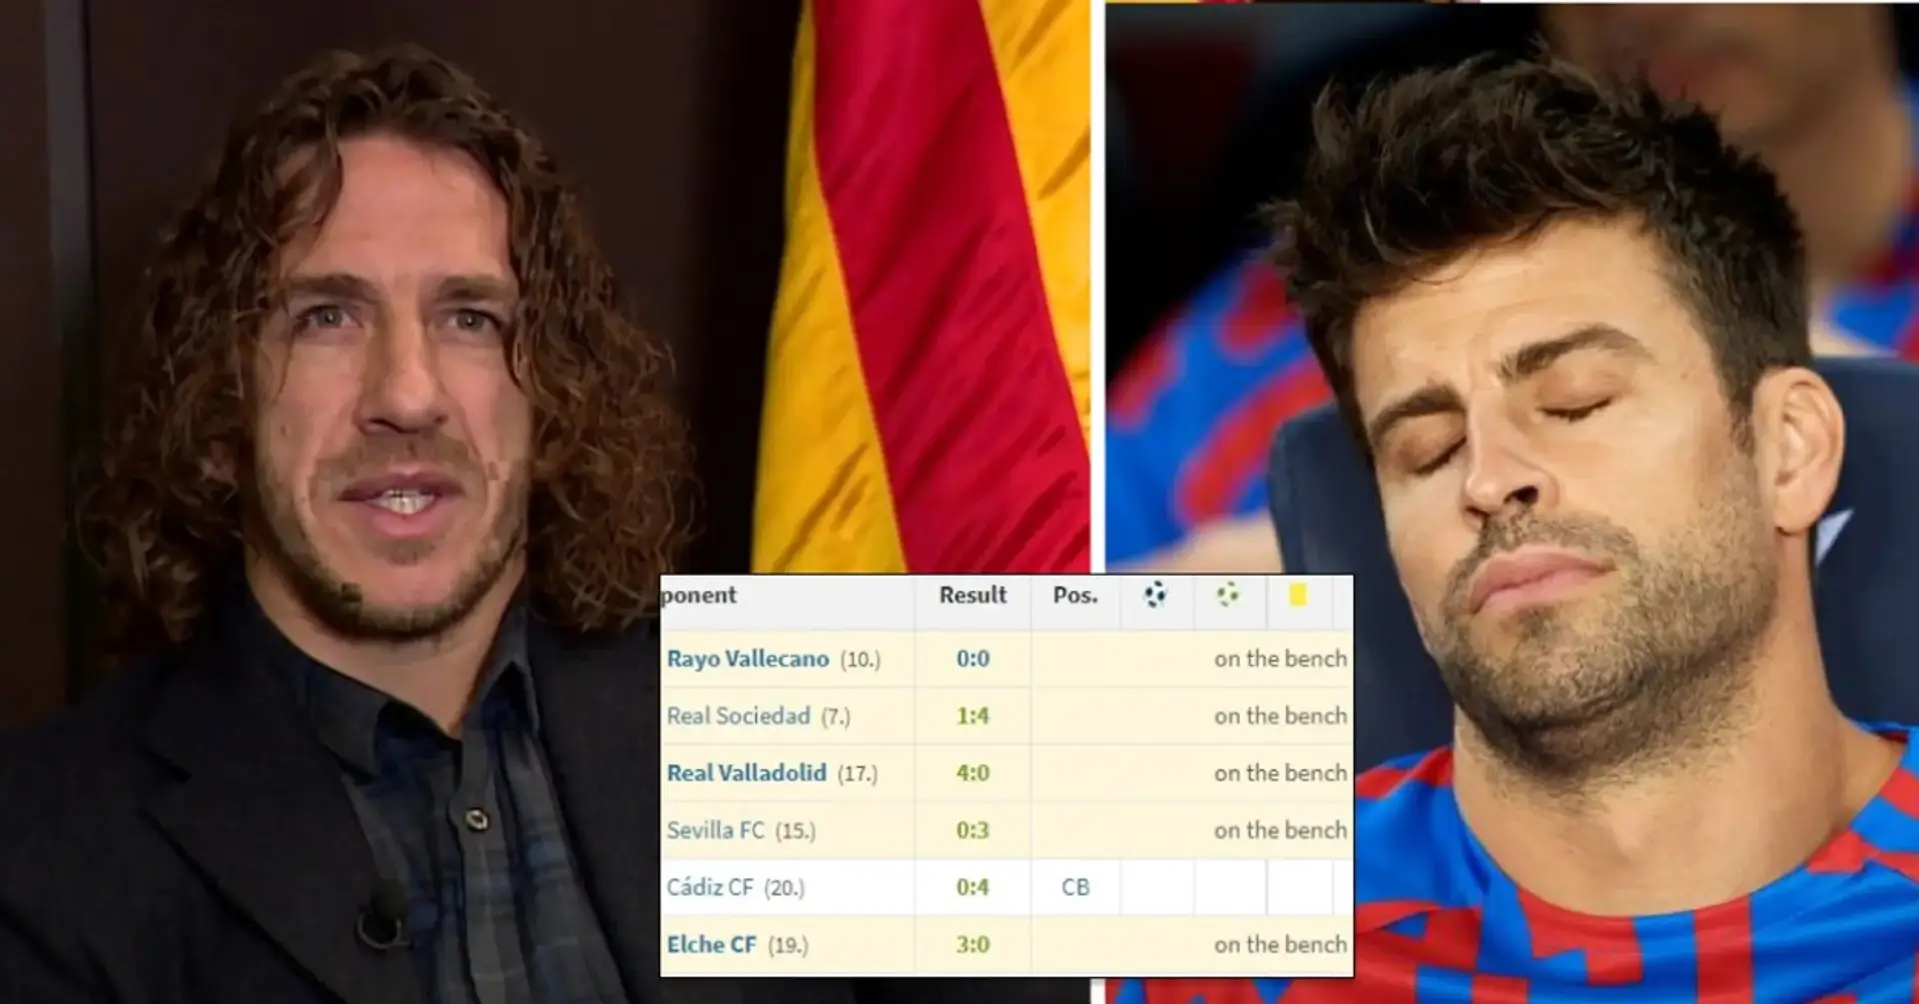 Carles Puyol spricht über den Moment, als ihm klar wurde, dass es an der Zeit war, Barça zu verlassen. Eine Anspielung auf Pique?